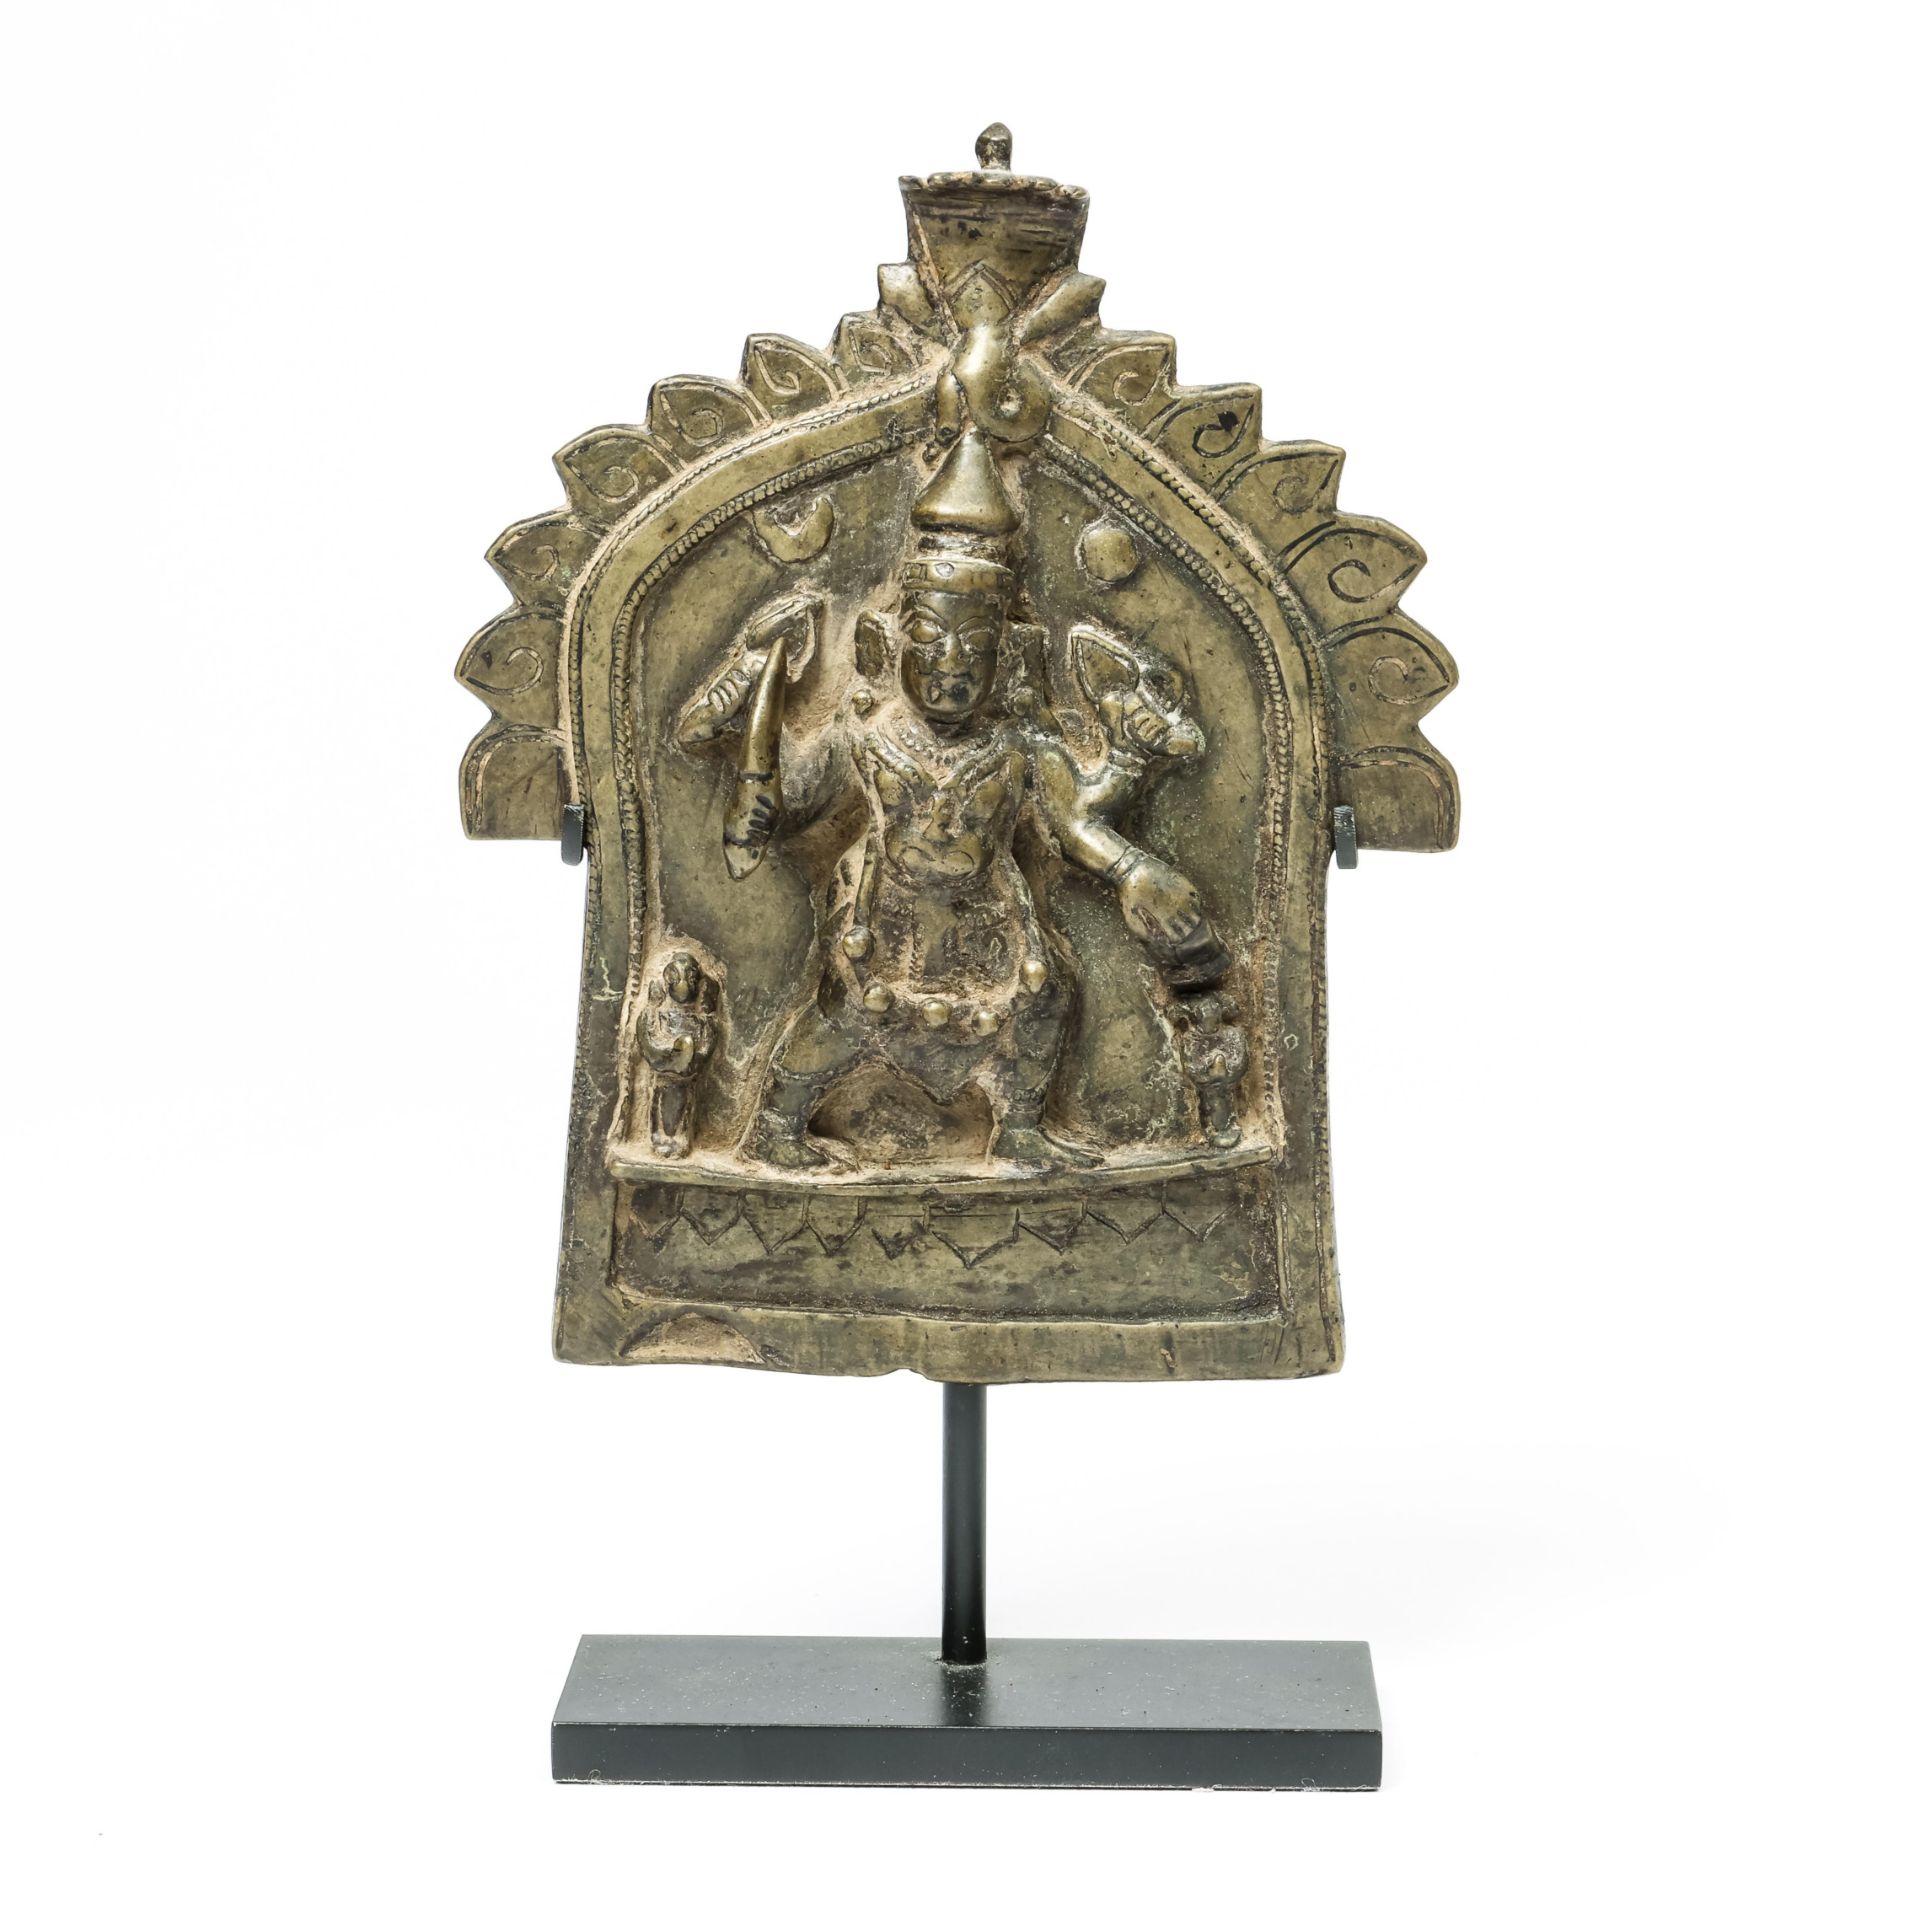 North India, a bronze votif plaque depicting Durga, 19th century